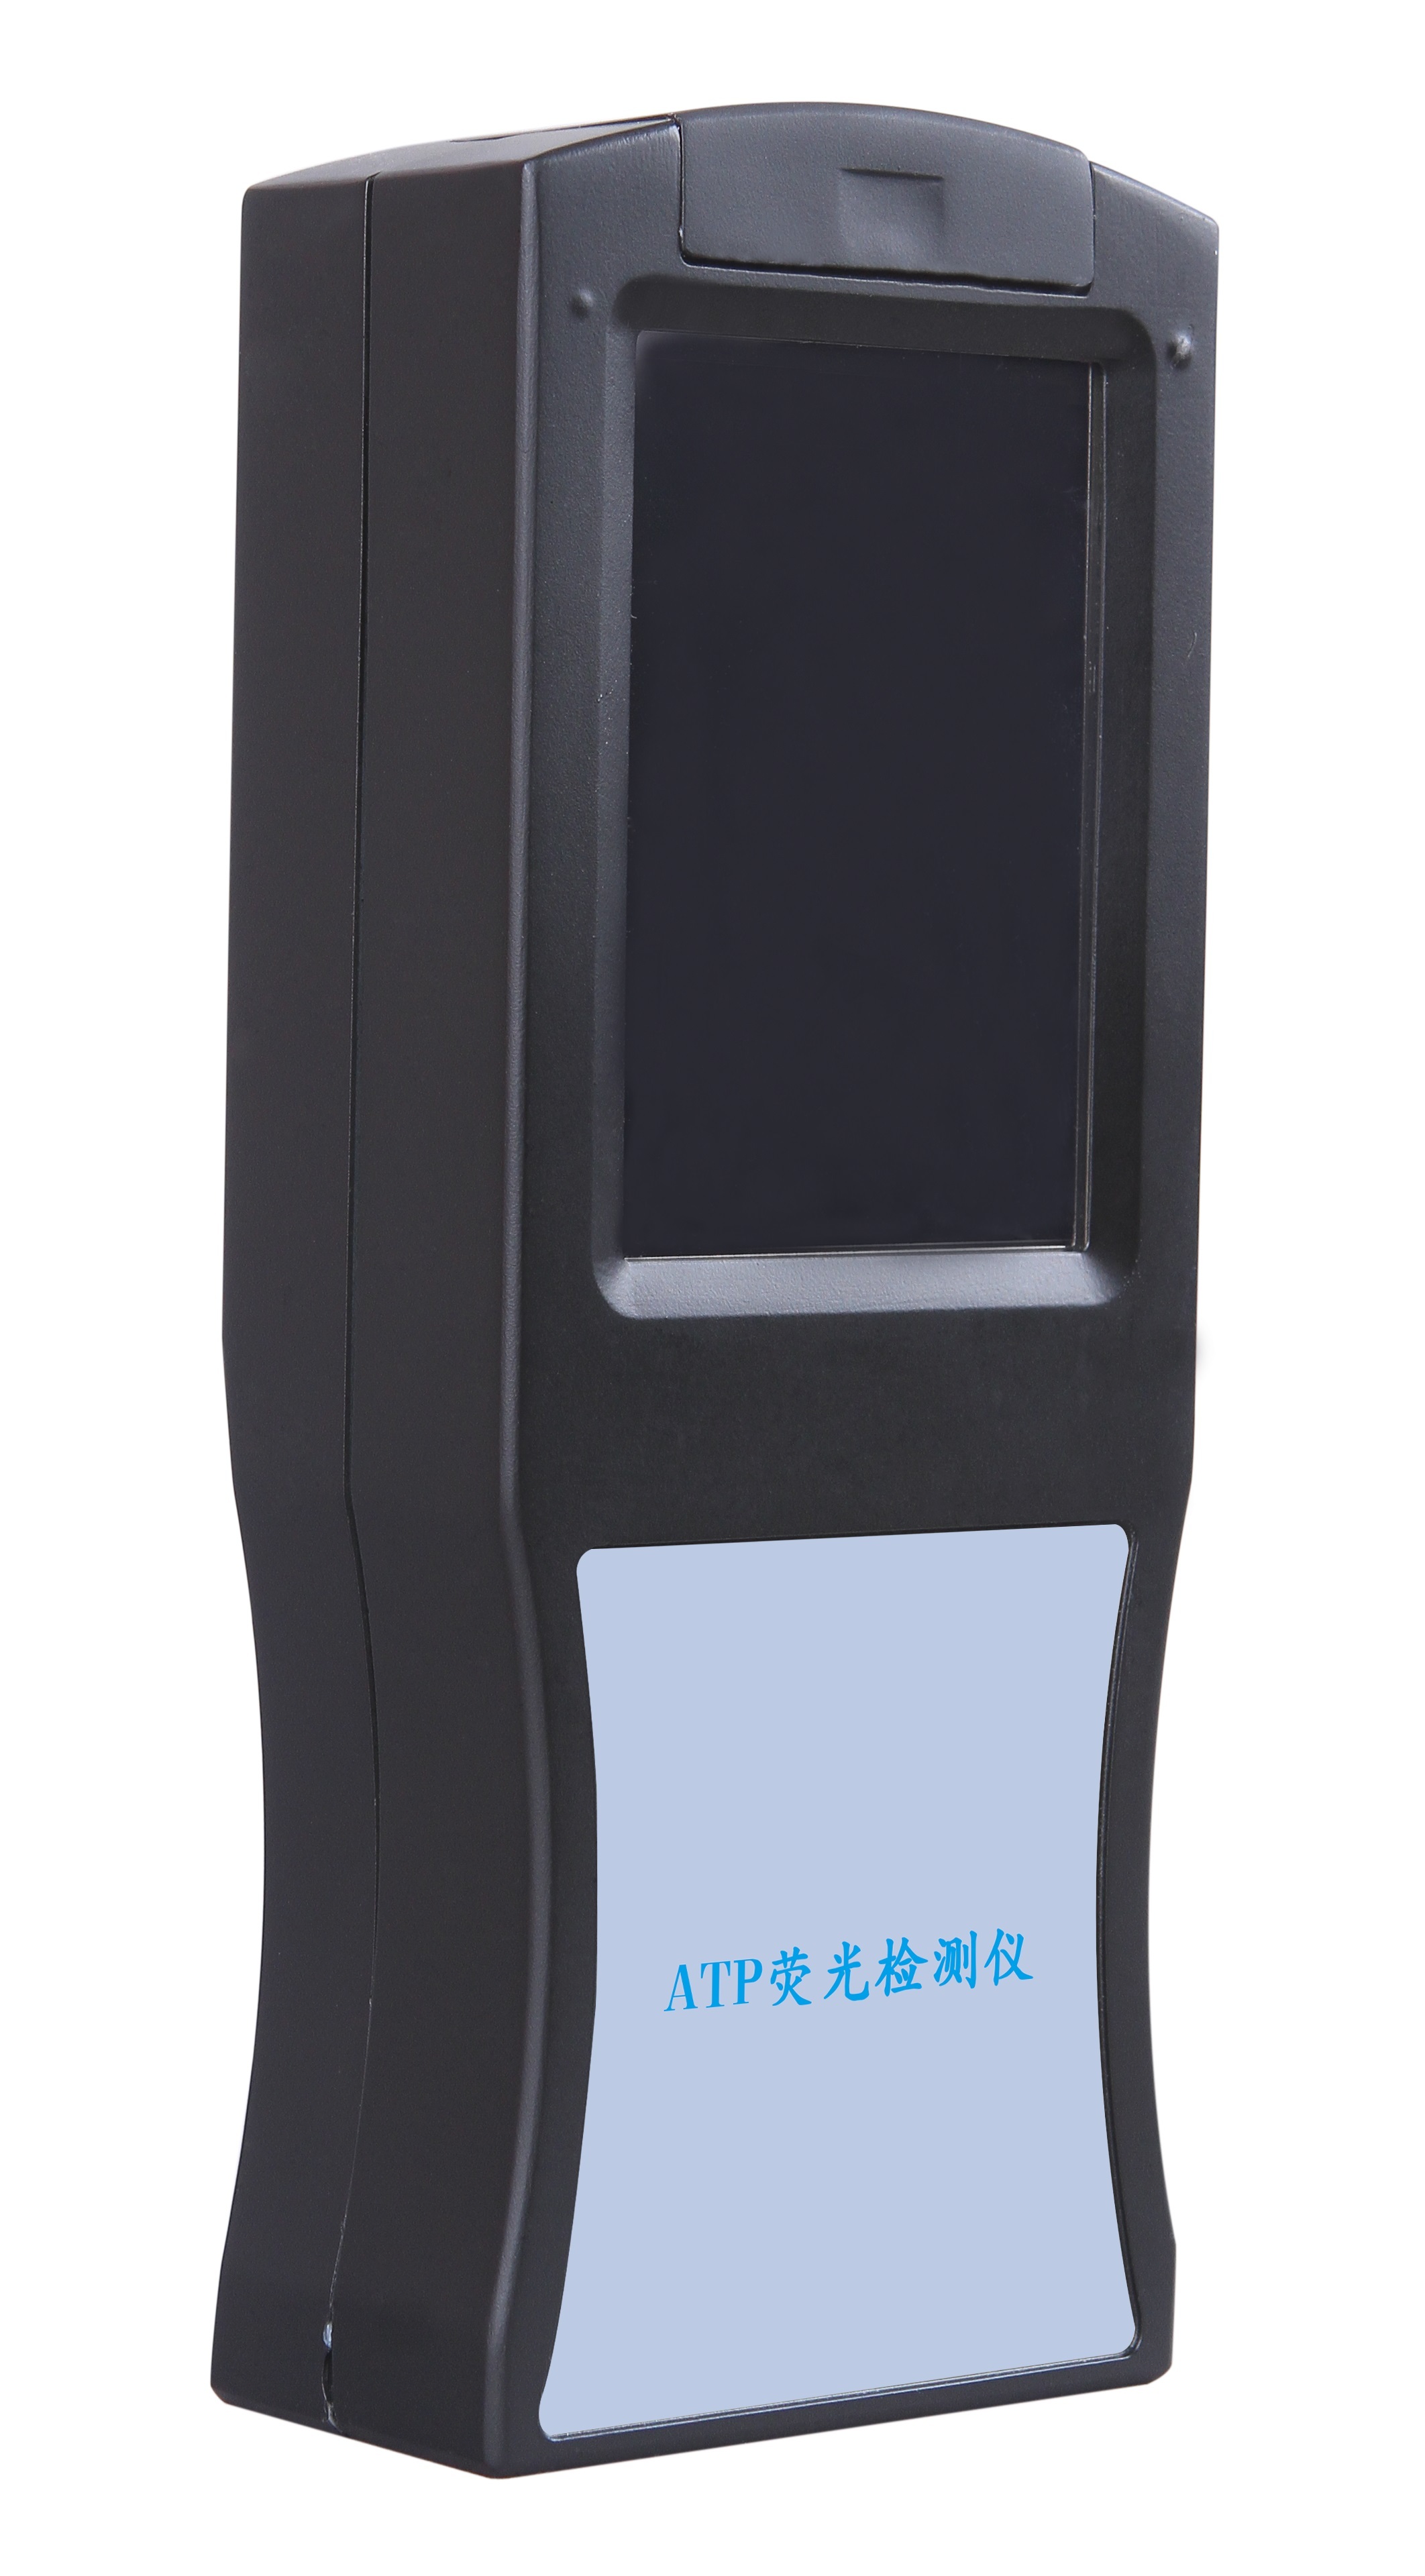 ATP荧光检测仪国家标准限量值深圳市芬析仪器制造有限公司